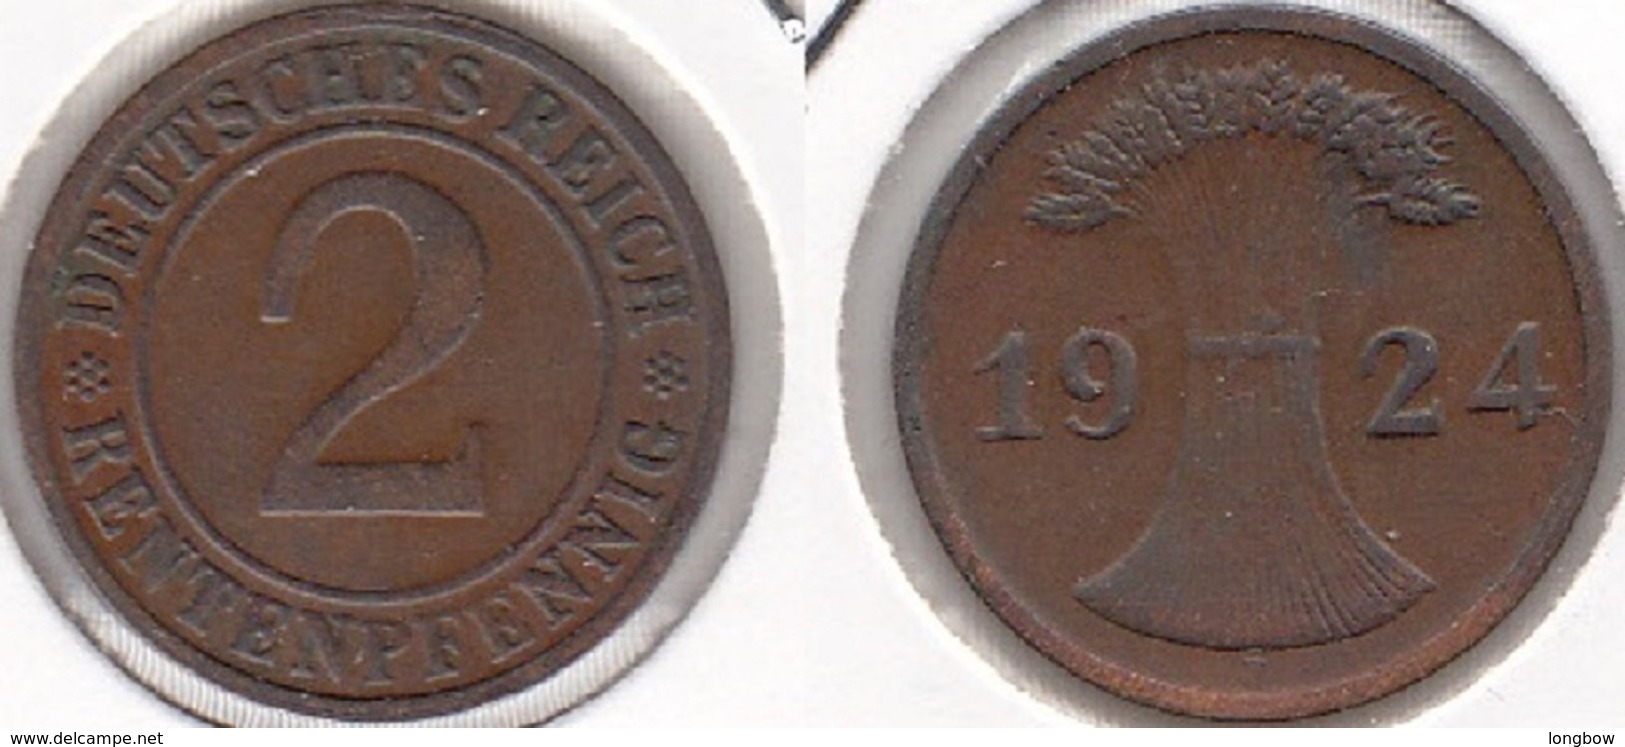 Germania 2 Rentenpfennig 1924 F KM#31 - Used - 2 Rentenpfennig & 2 Reichspfennig